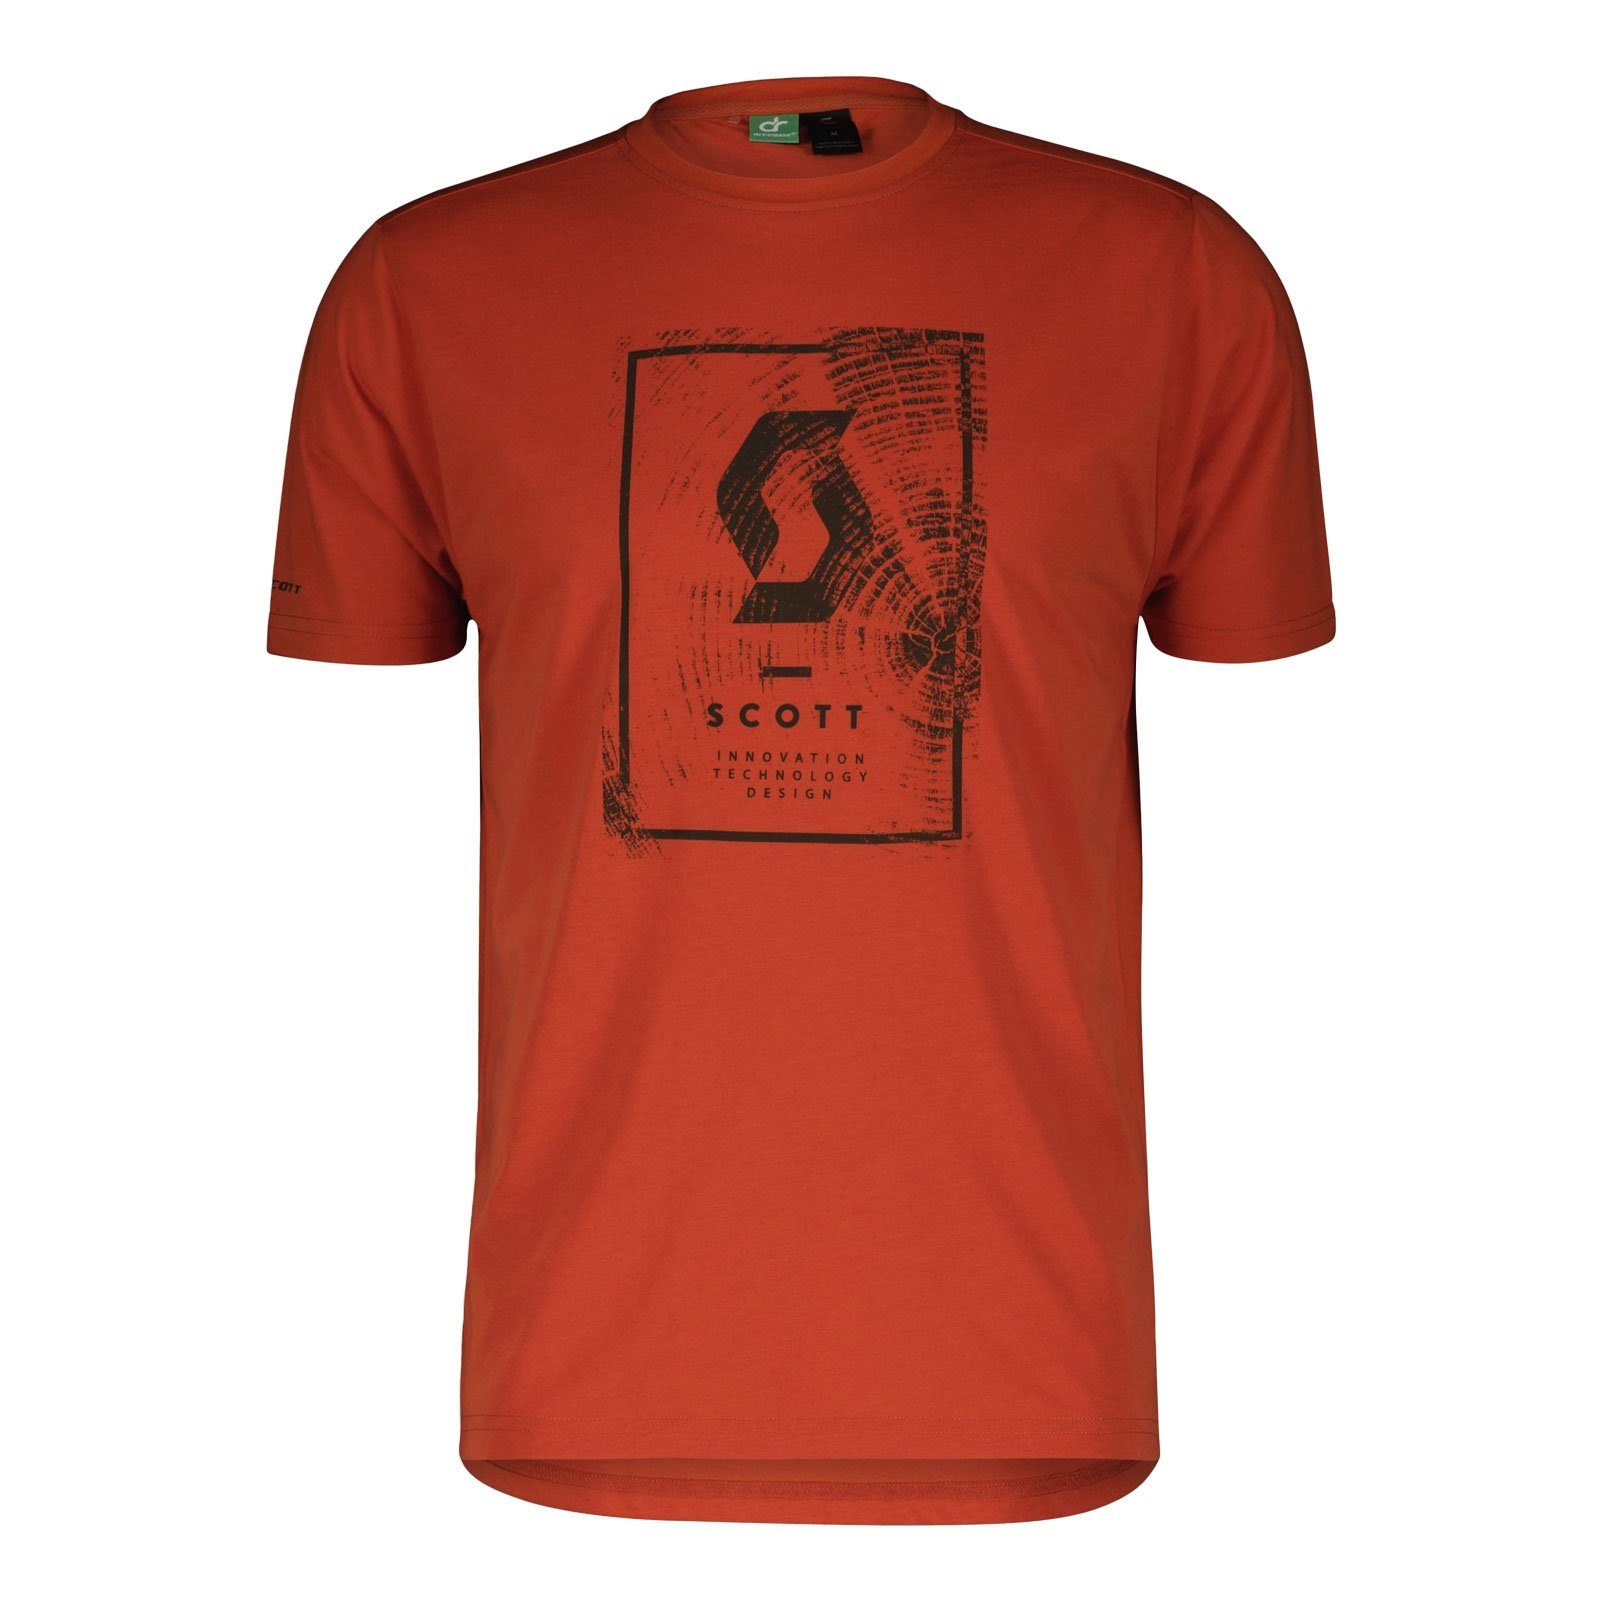 Scott T-Shirt Defined Dri T-Shirt mit großem Print auf der Brust 7539 braze orange